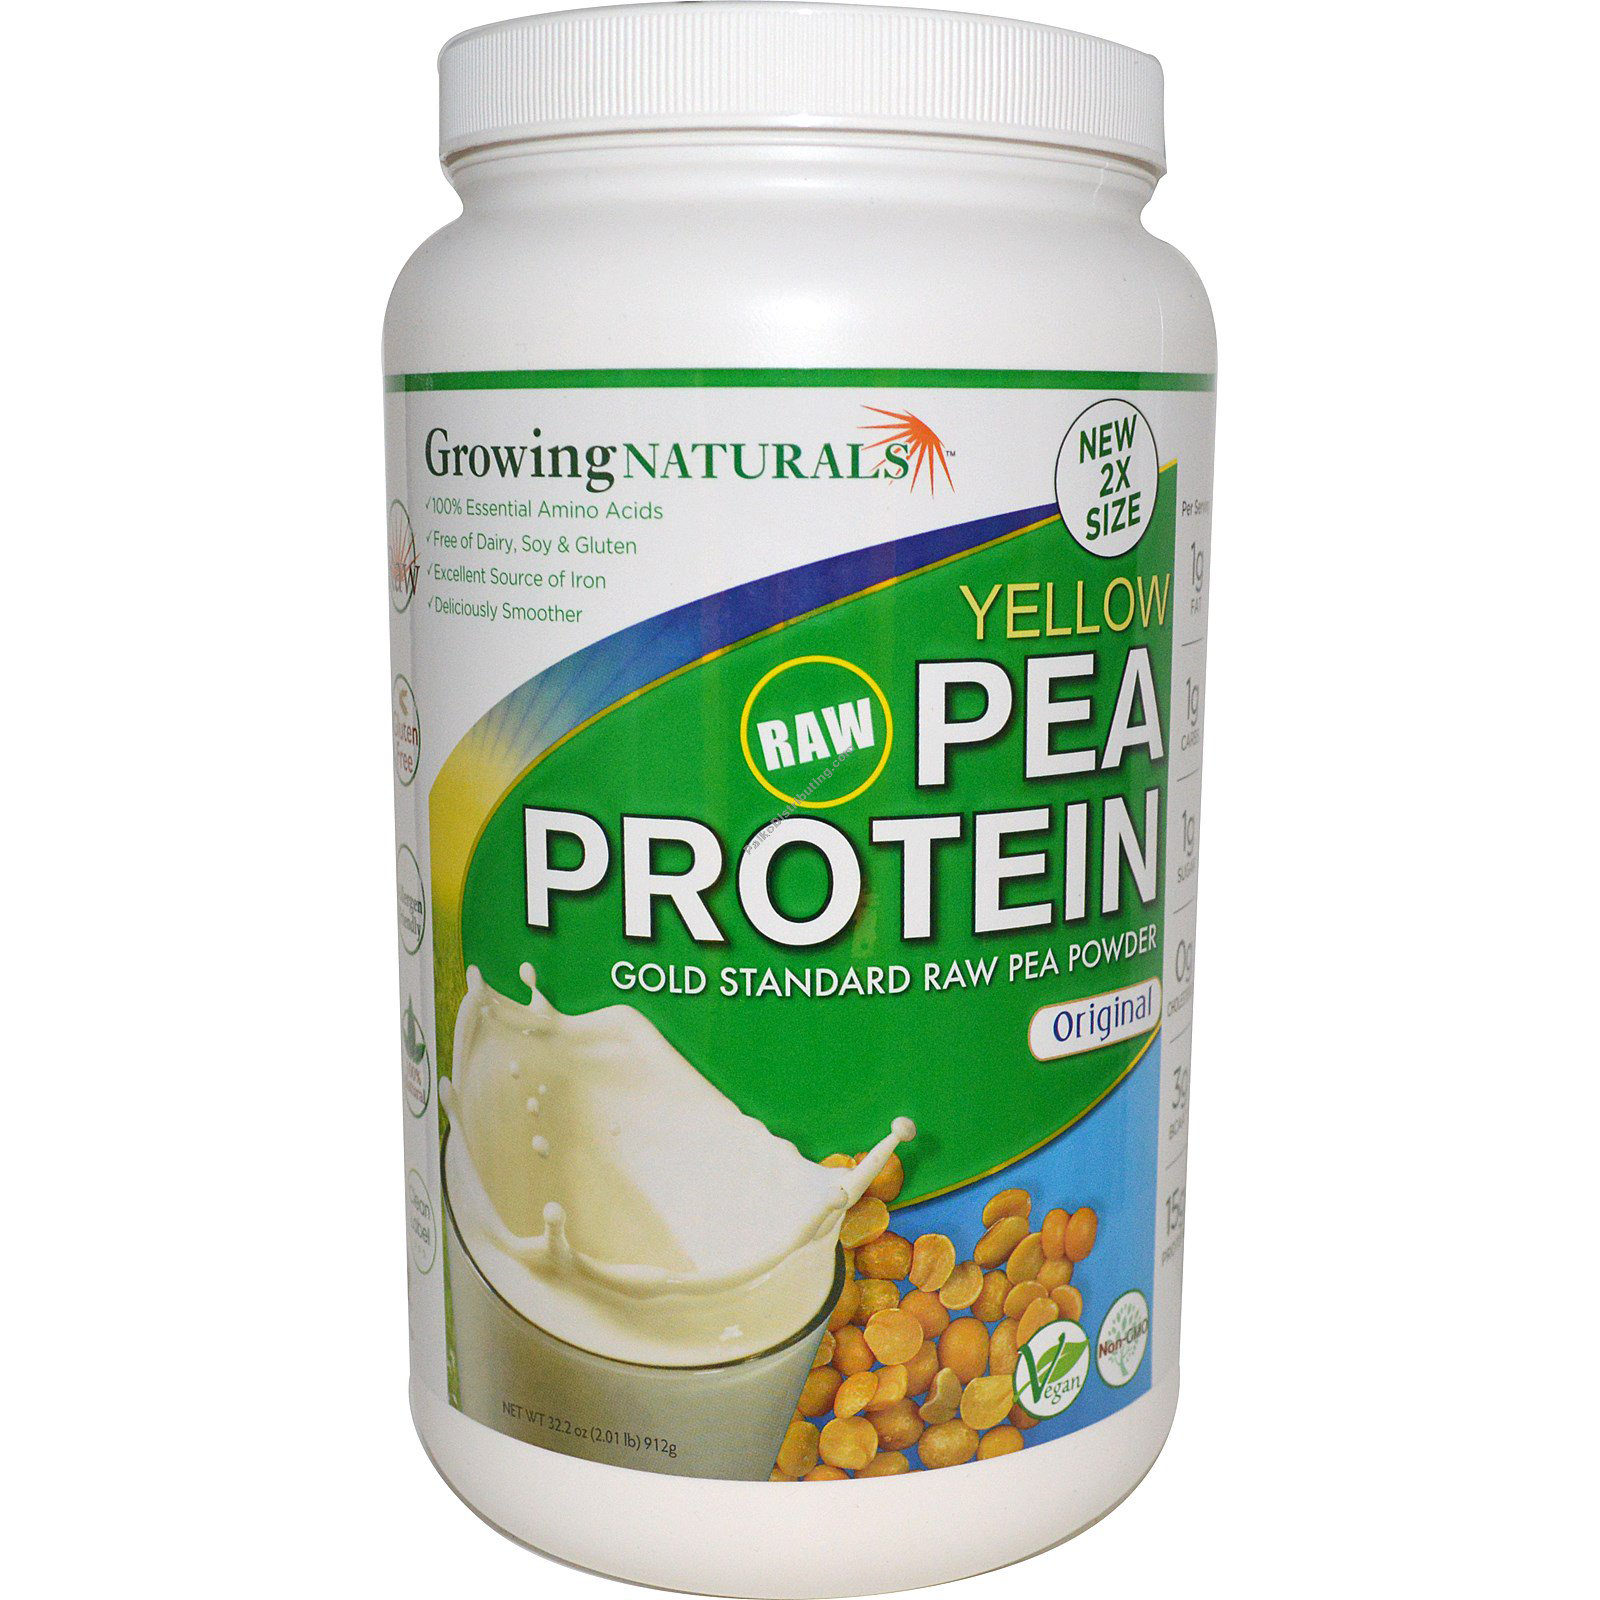 Product Image: Pea Protein Original